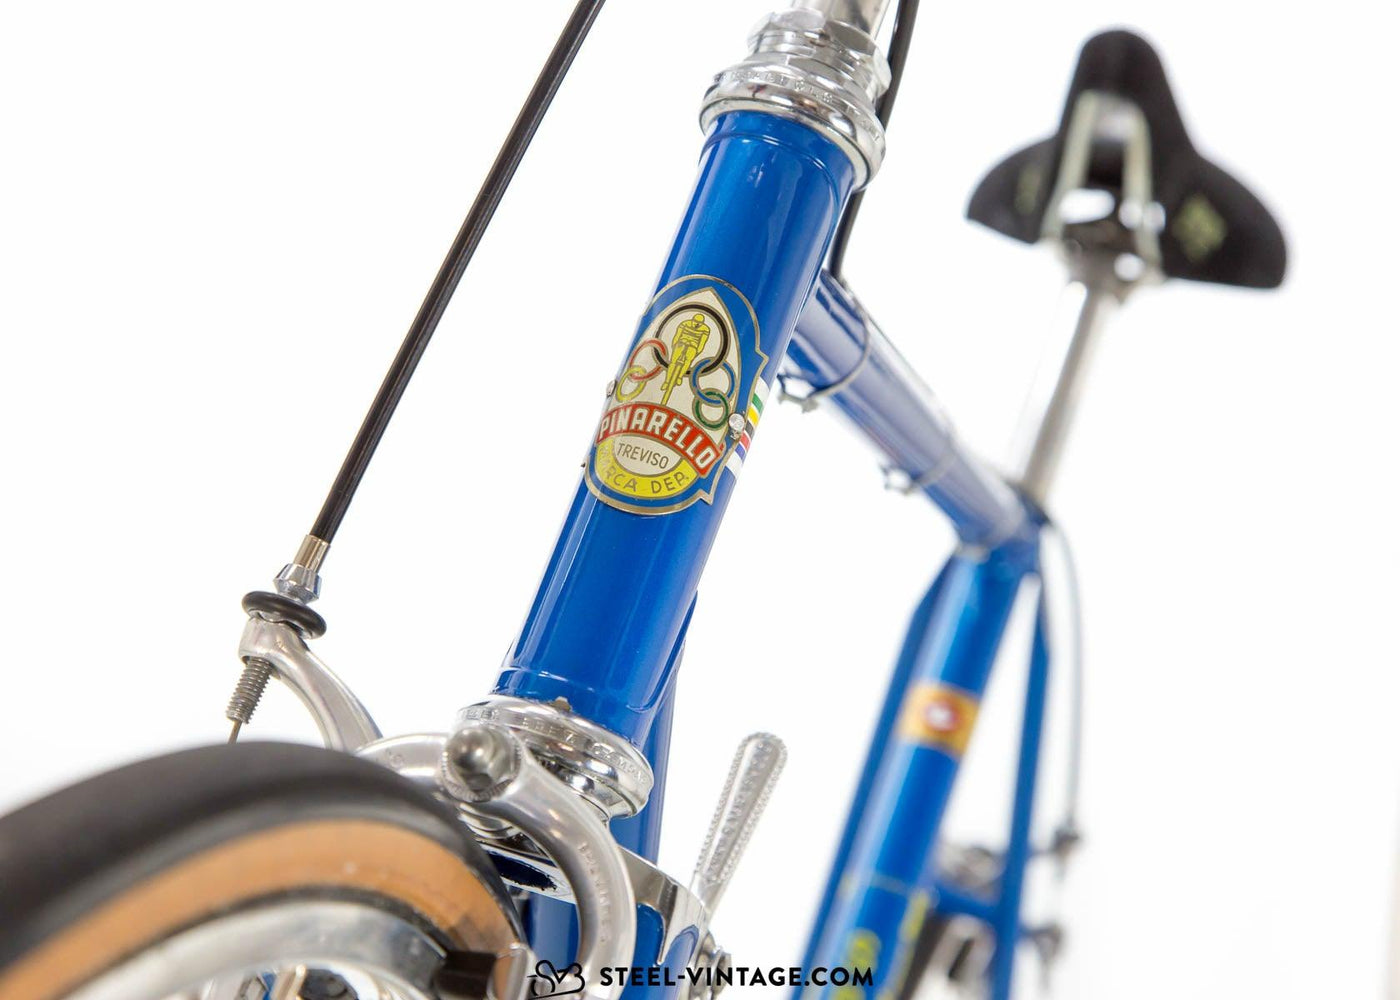 Pinarello Special Classic Road Bike 1970s - Steel Vintage Bikes